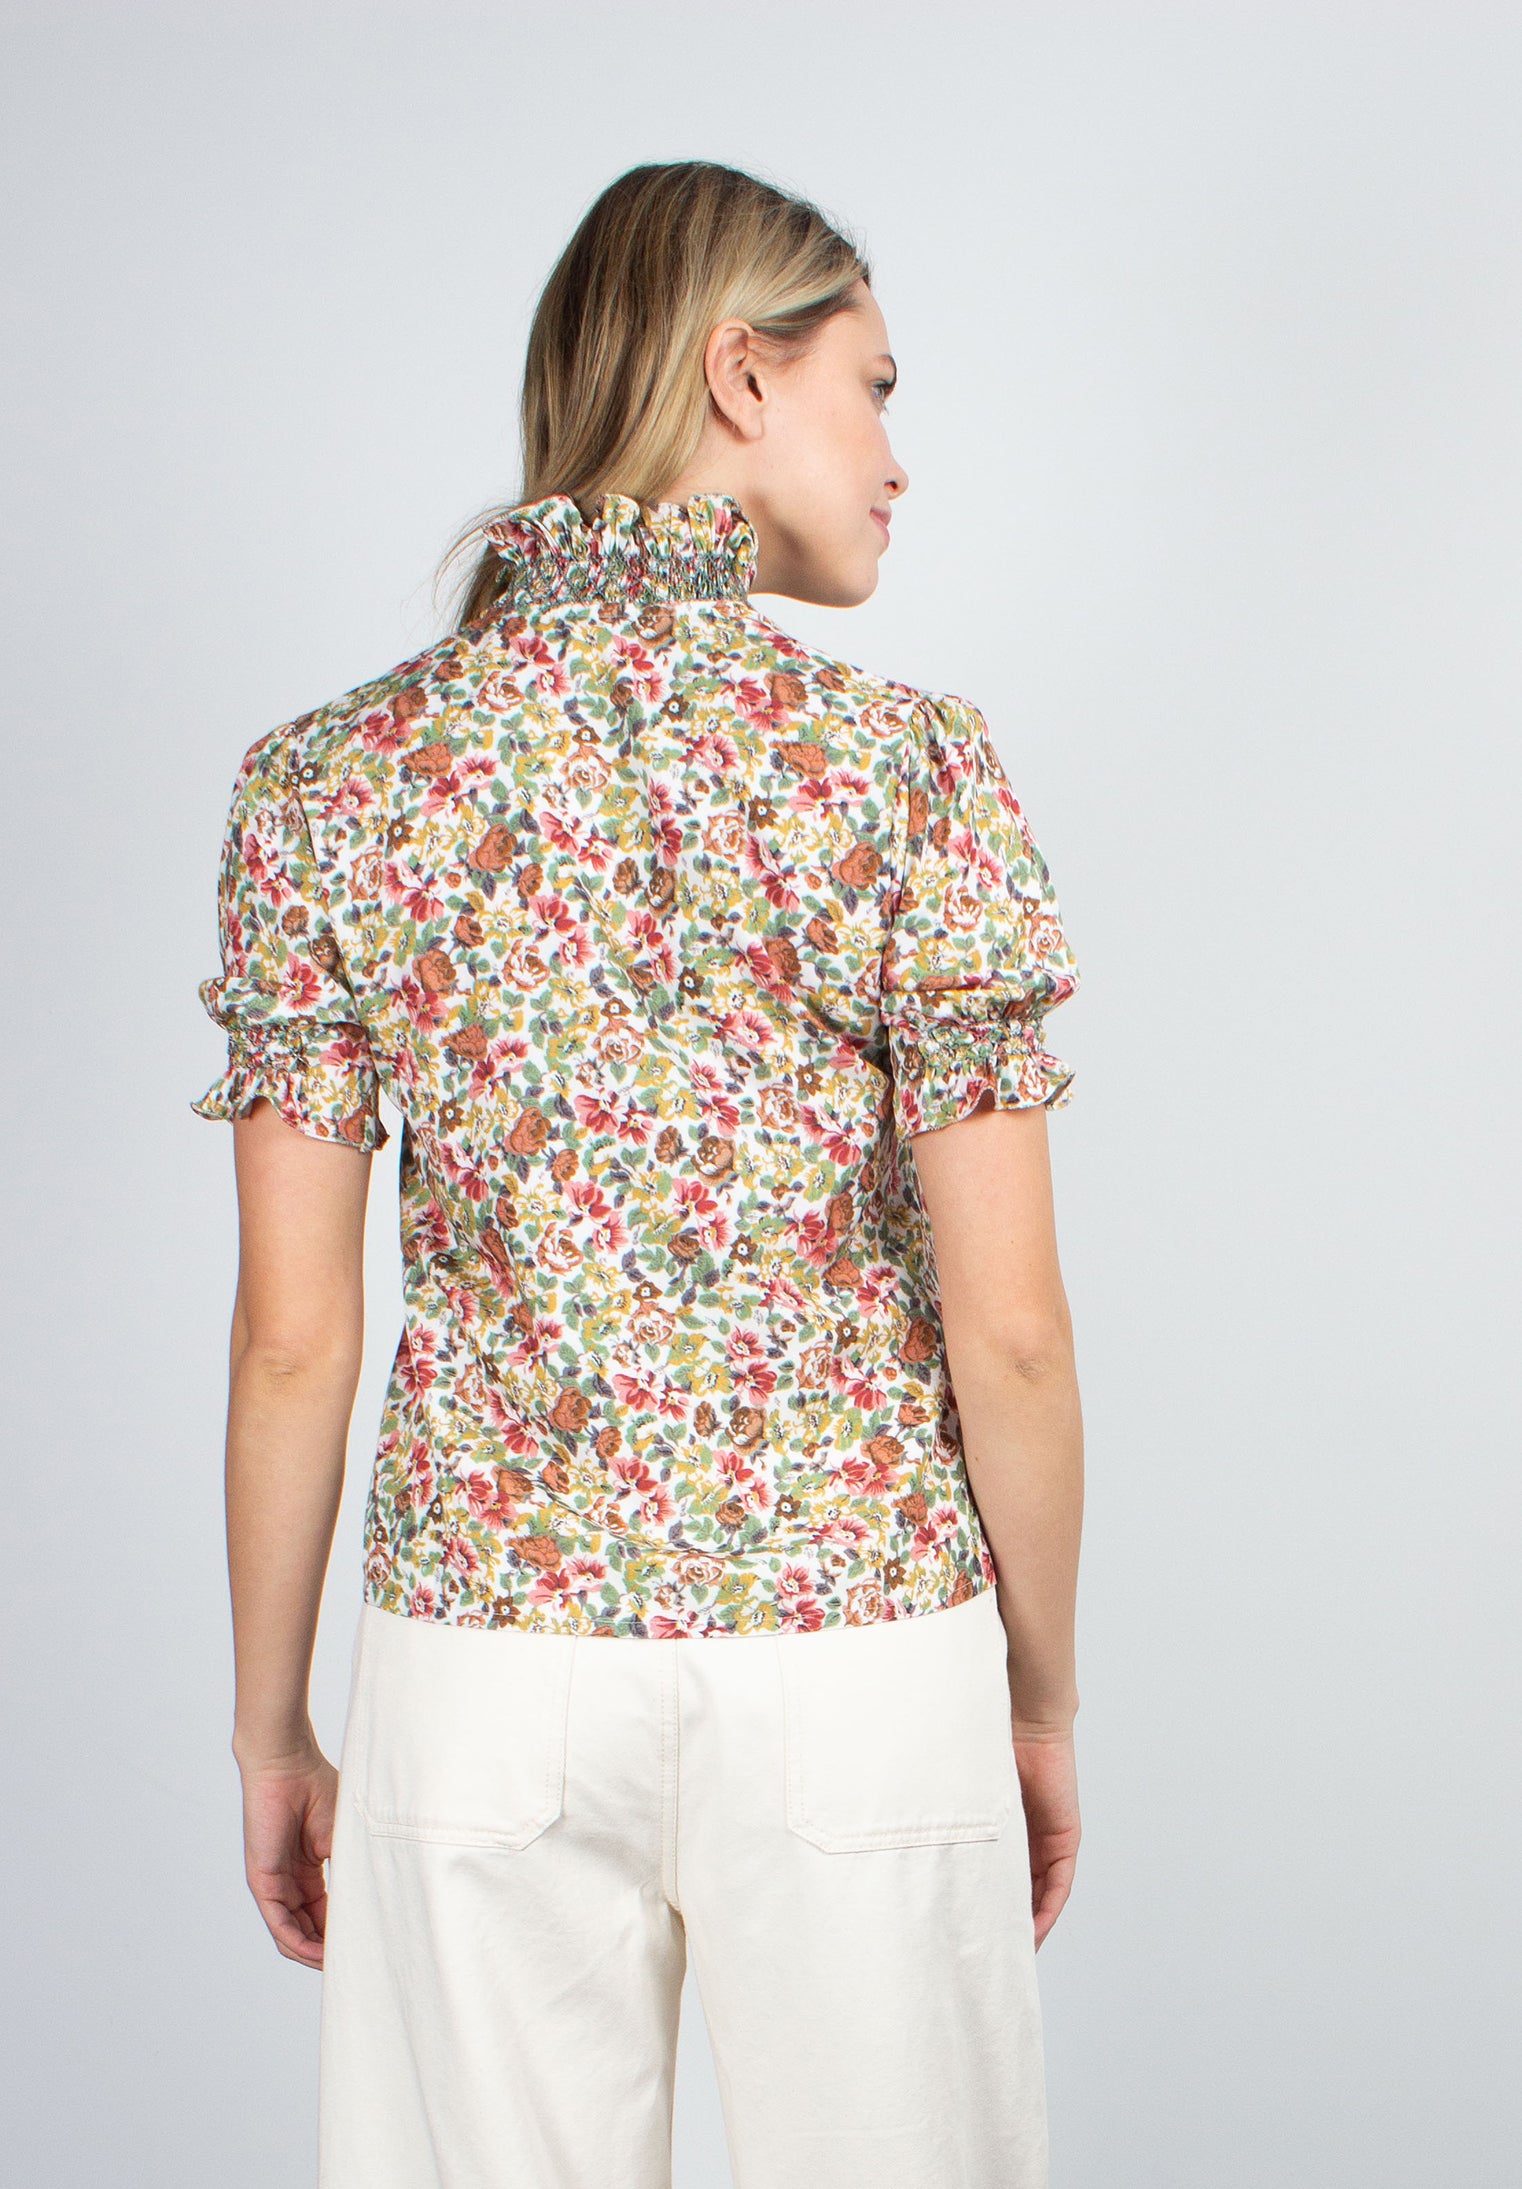 Loretta Caponi Donatella floral-print blouse